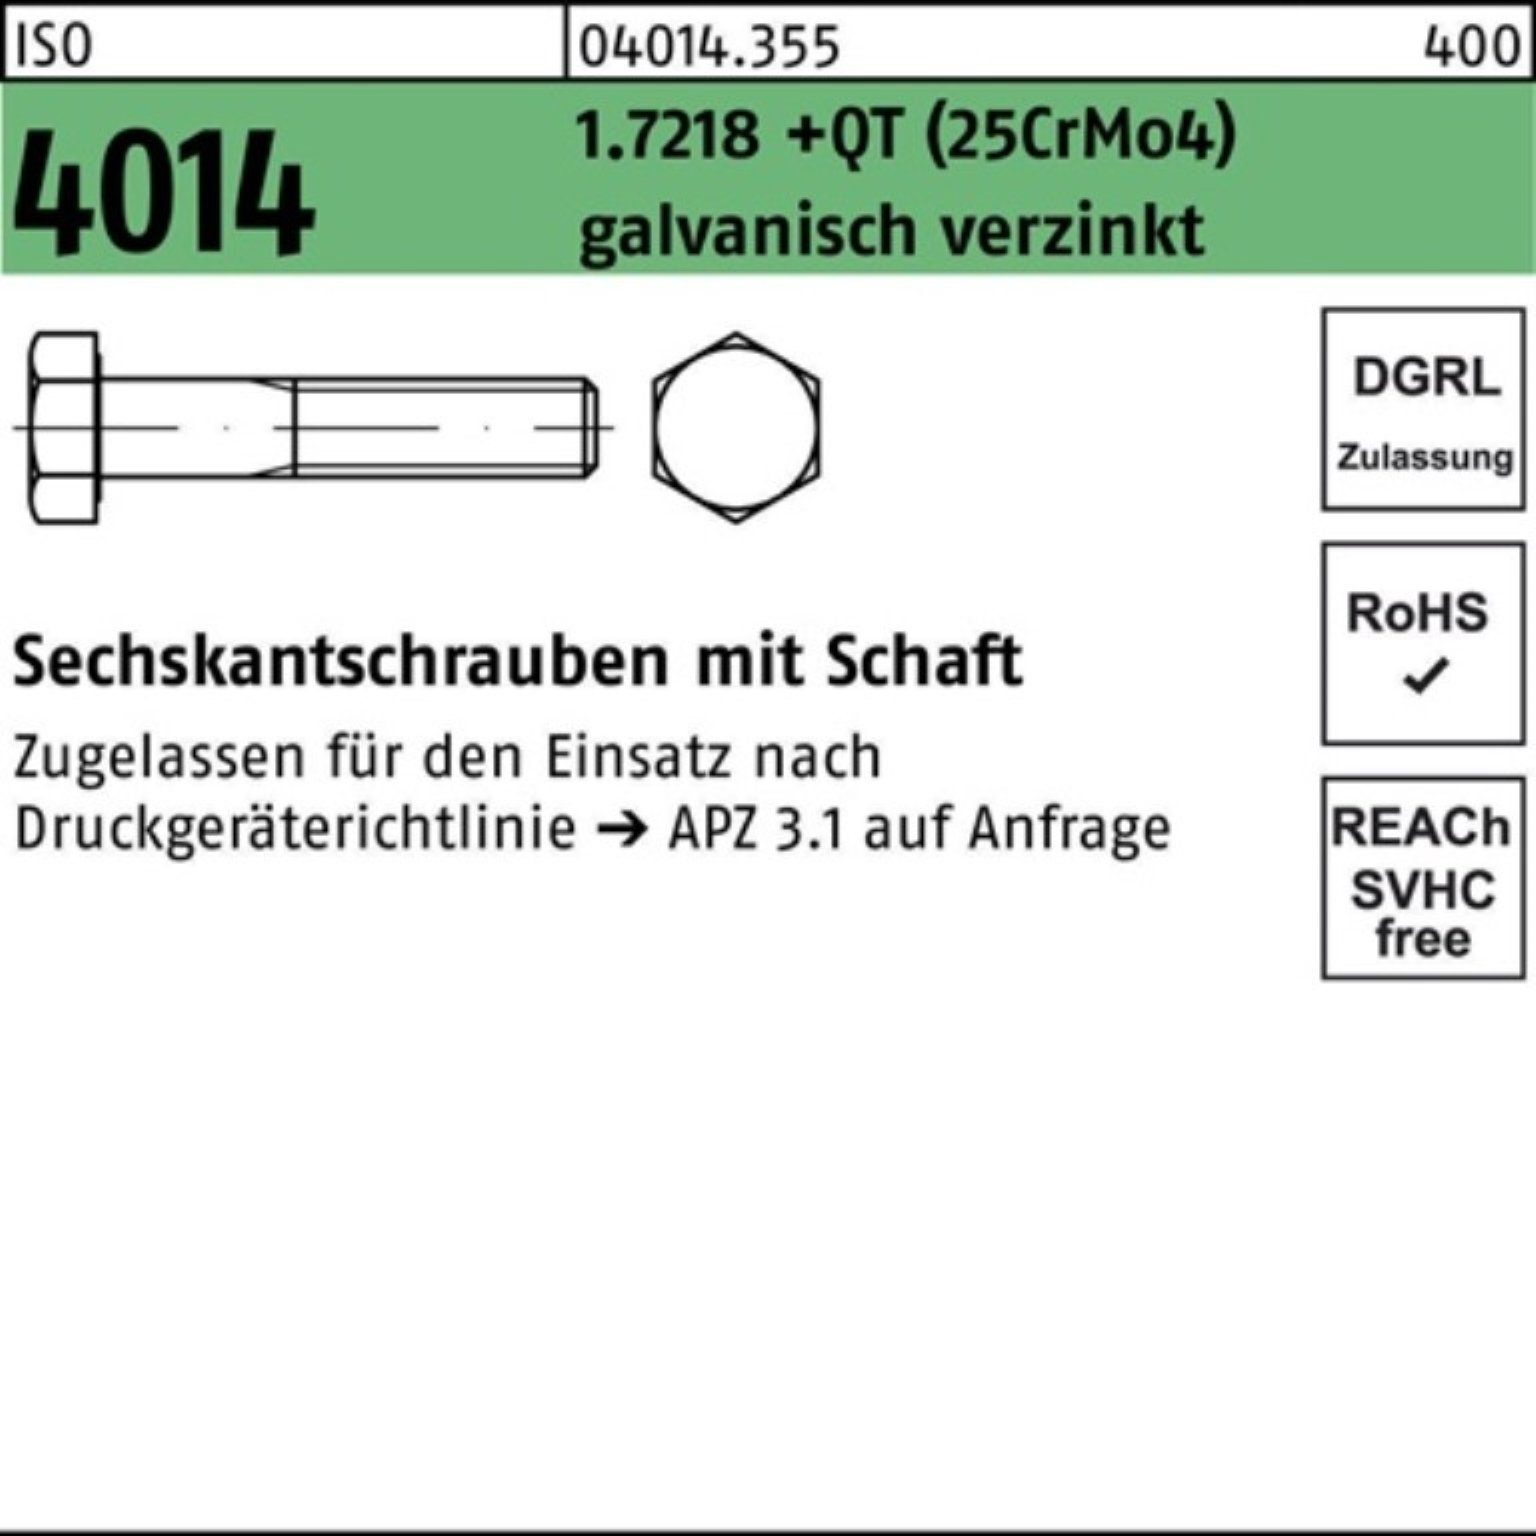 Sechskantschraube 100er 1.7218 M36x150 Bufab Pack (25CrM Sechskantschraube Schaft 4014 +QT ISO